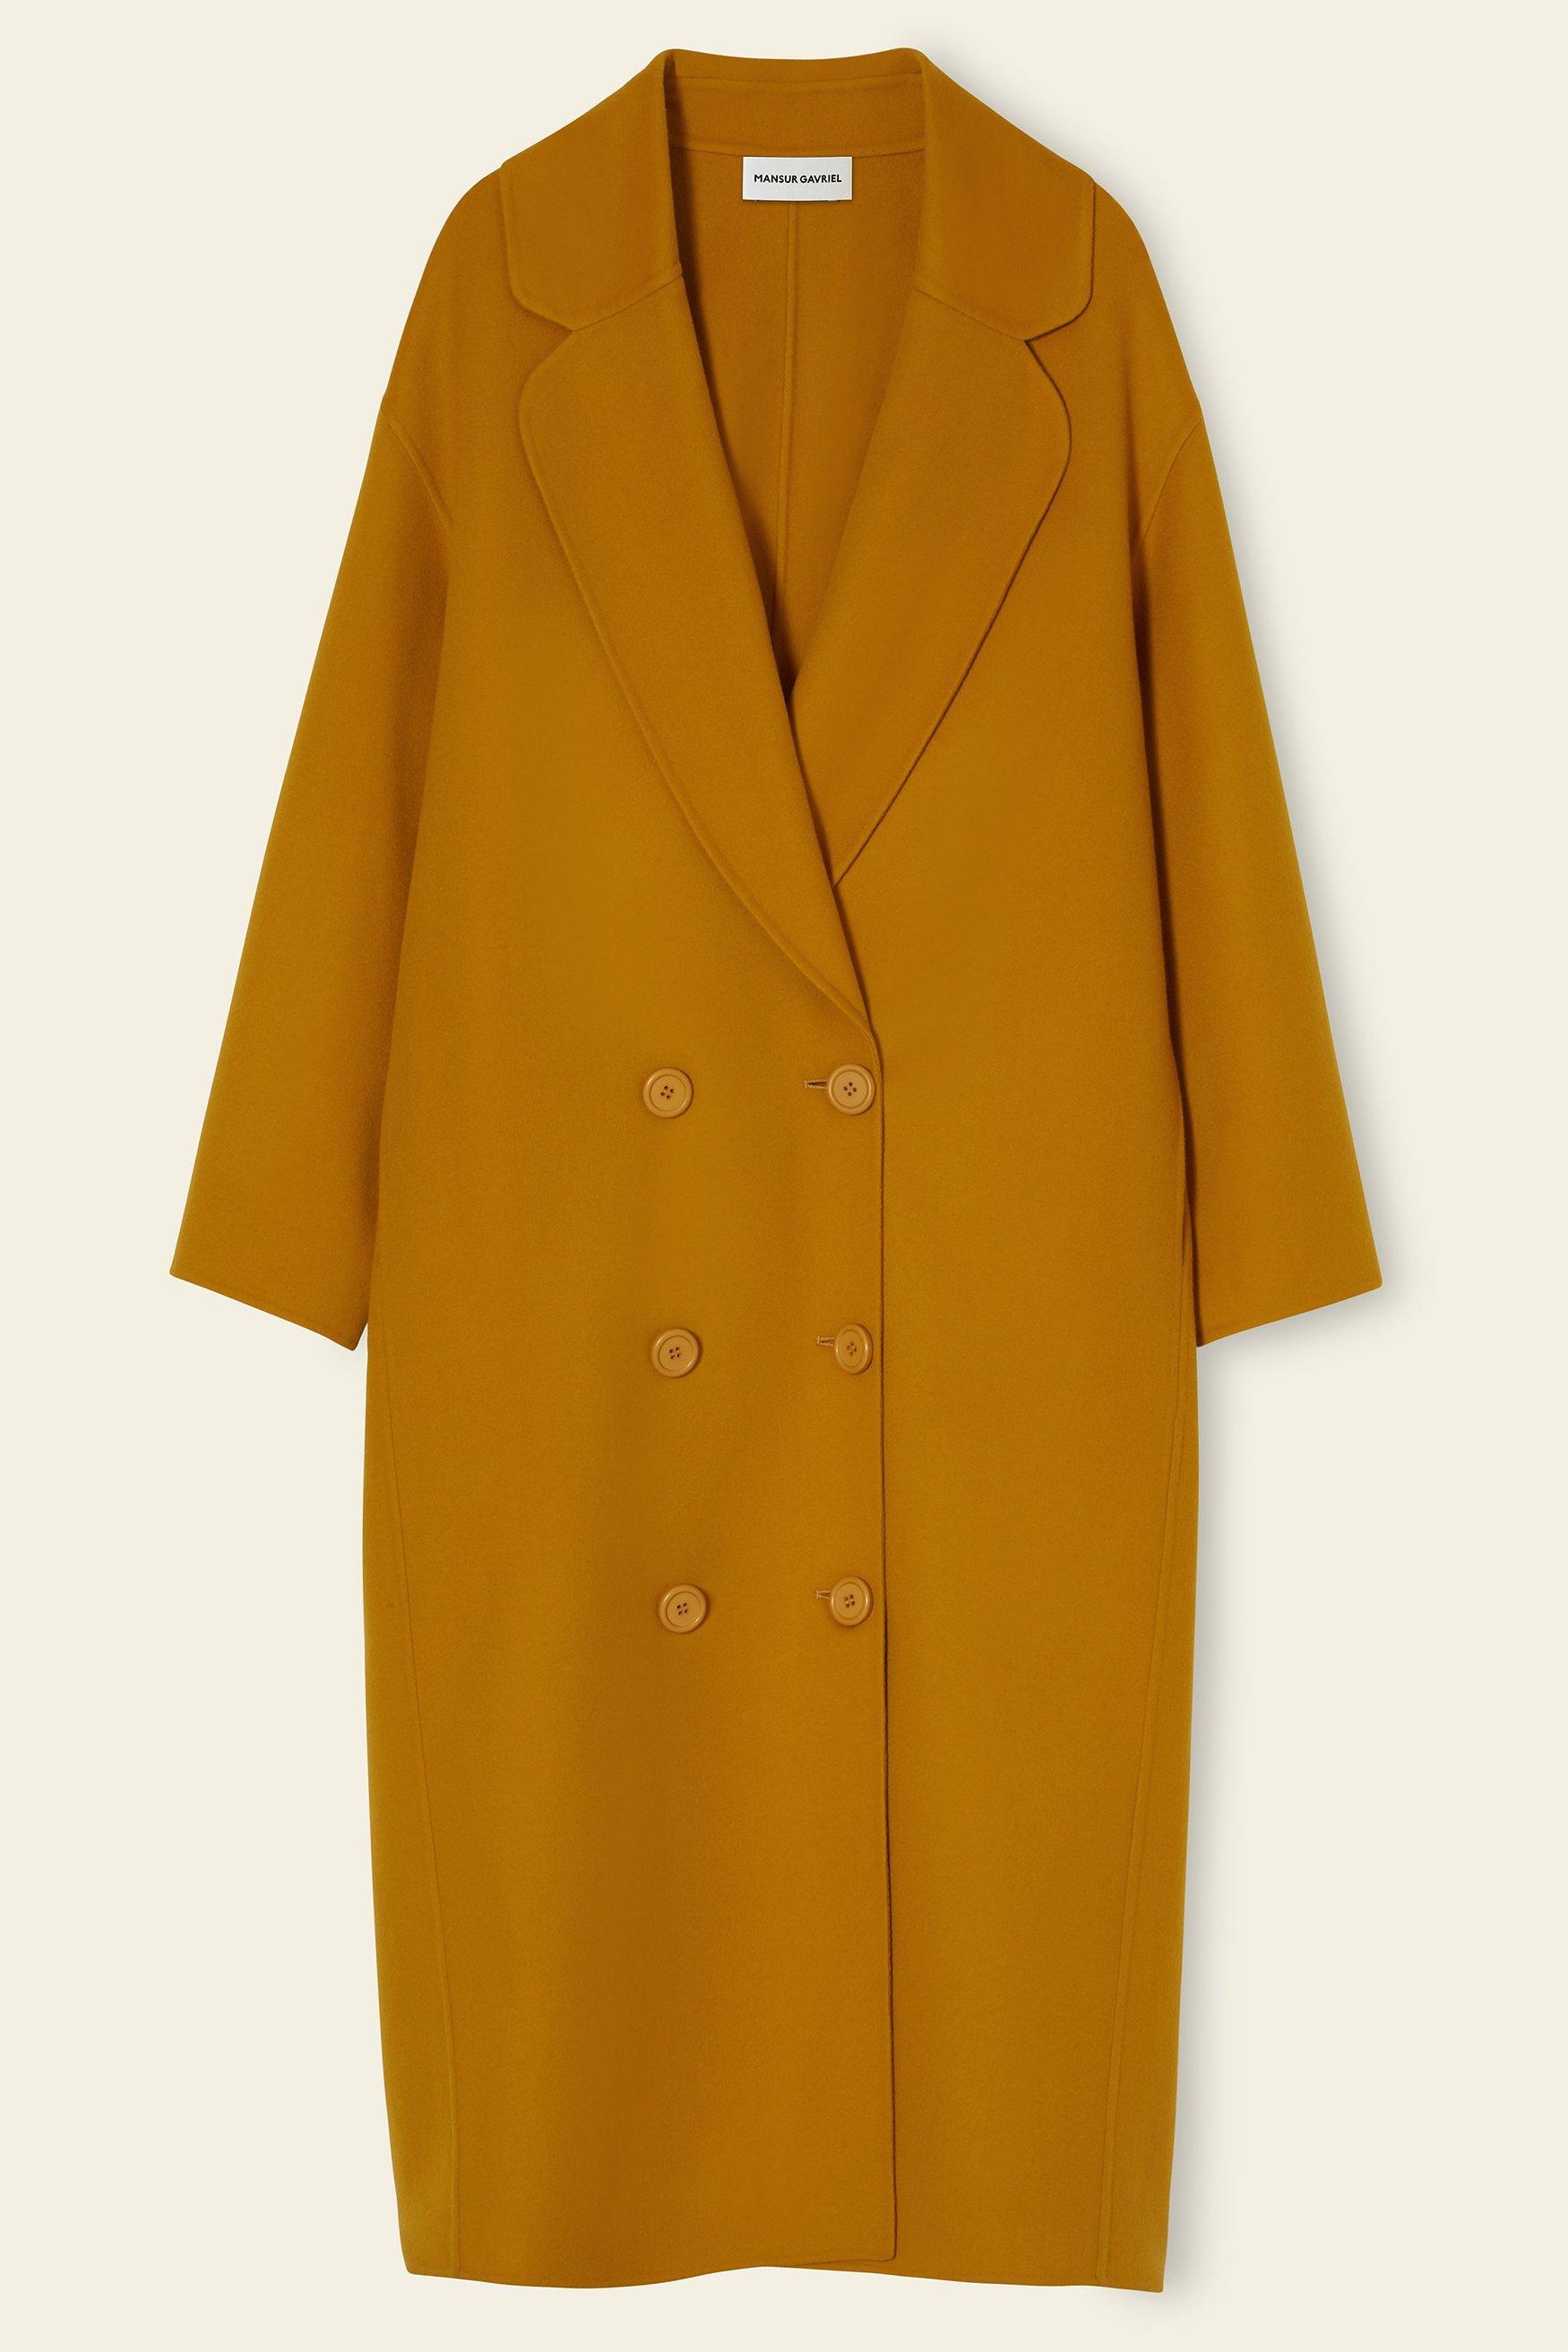 Mansur Gavriel Wool Cashmere Oversized Coat - Mustard in Yellow - Lyst